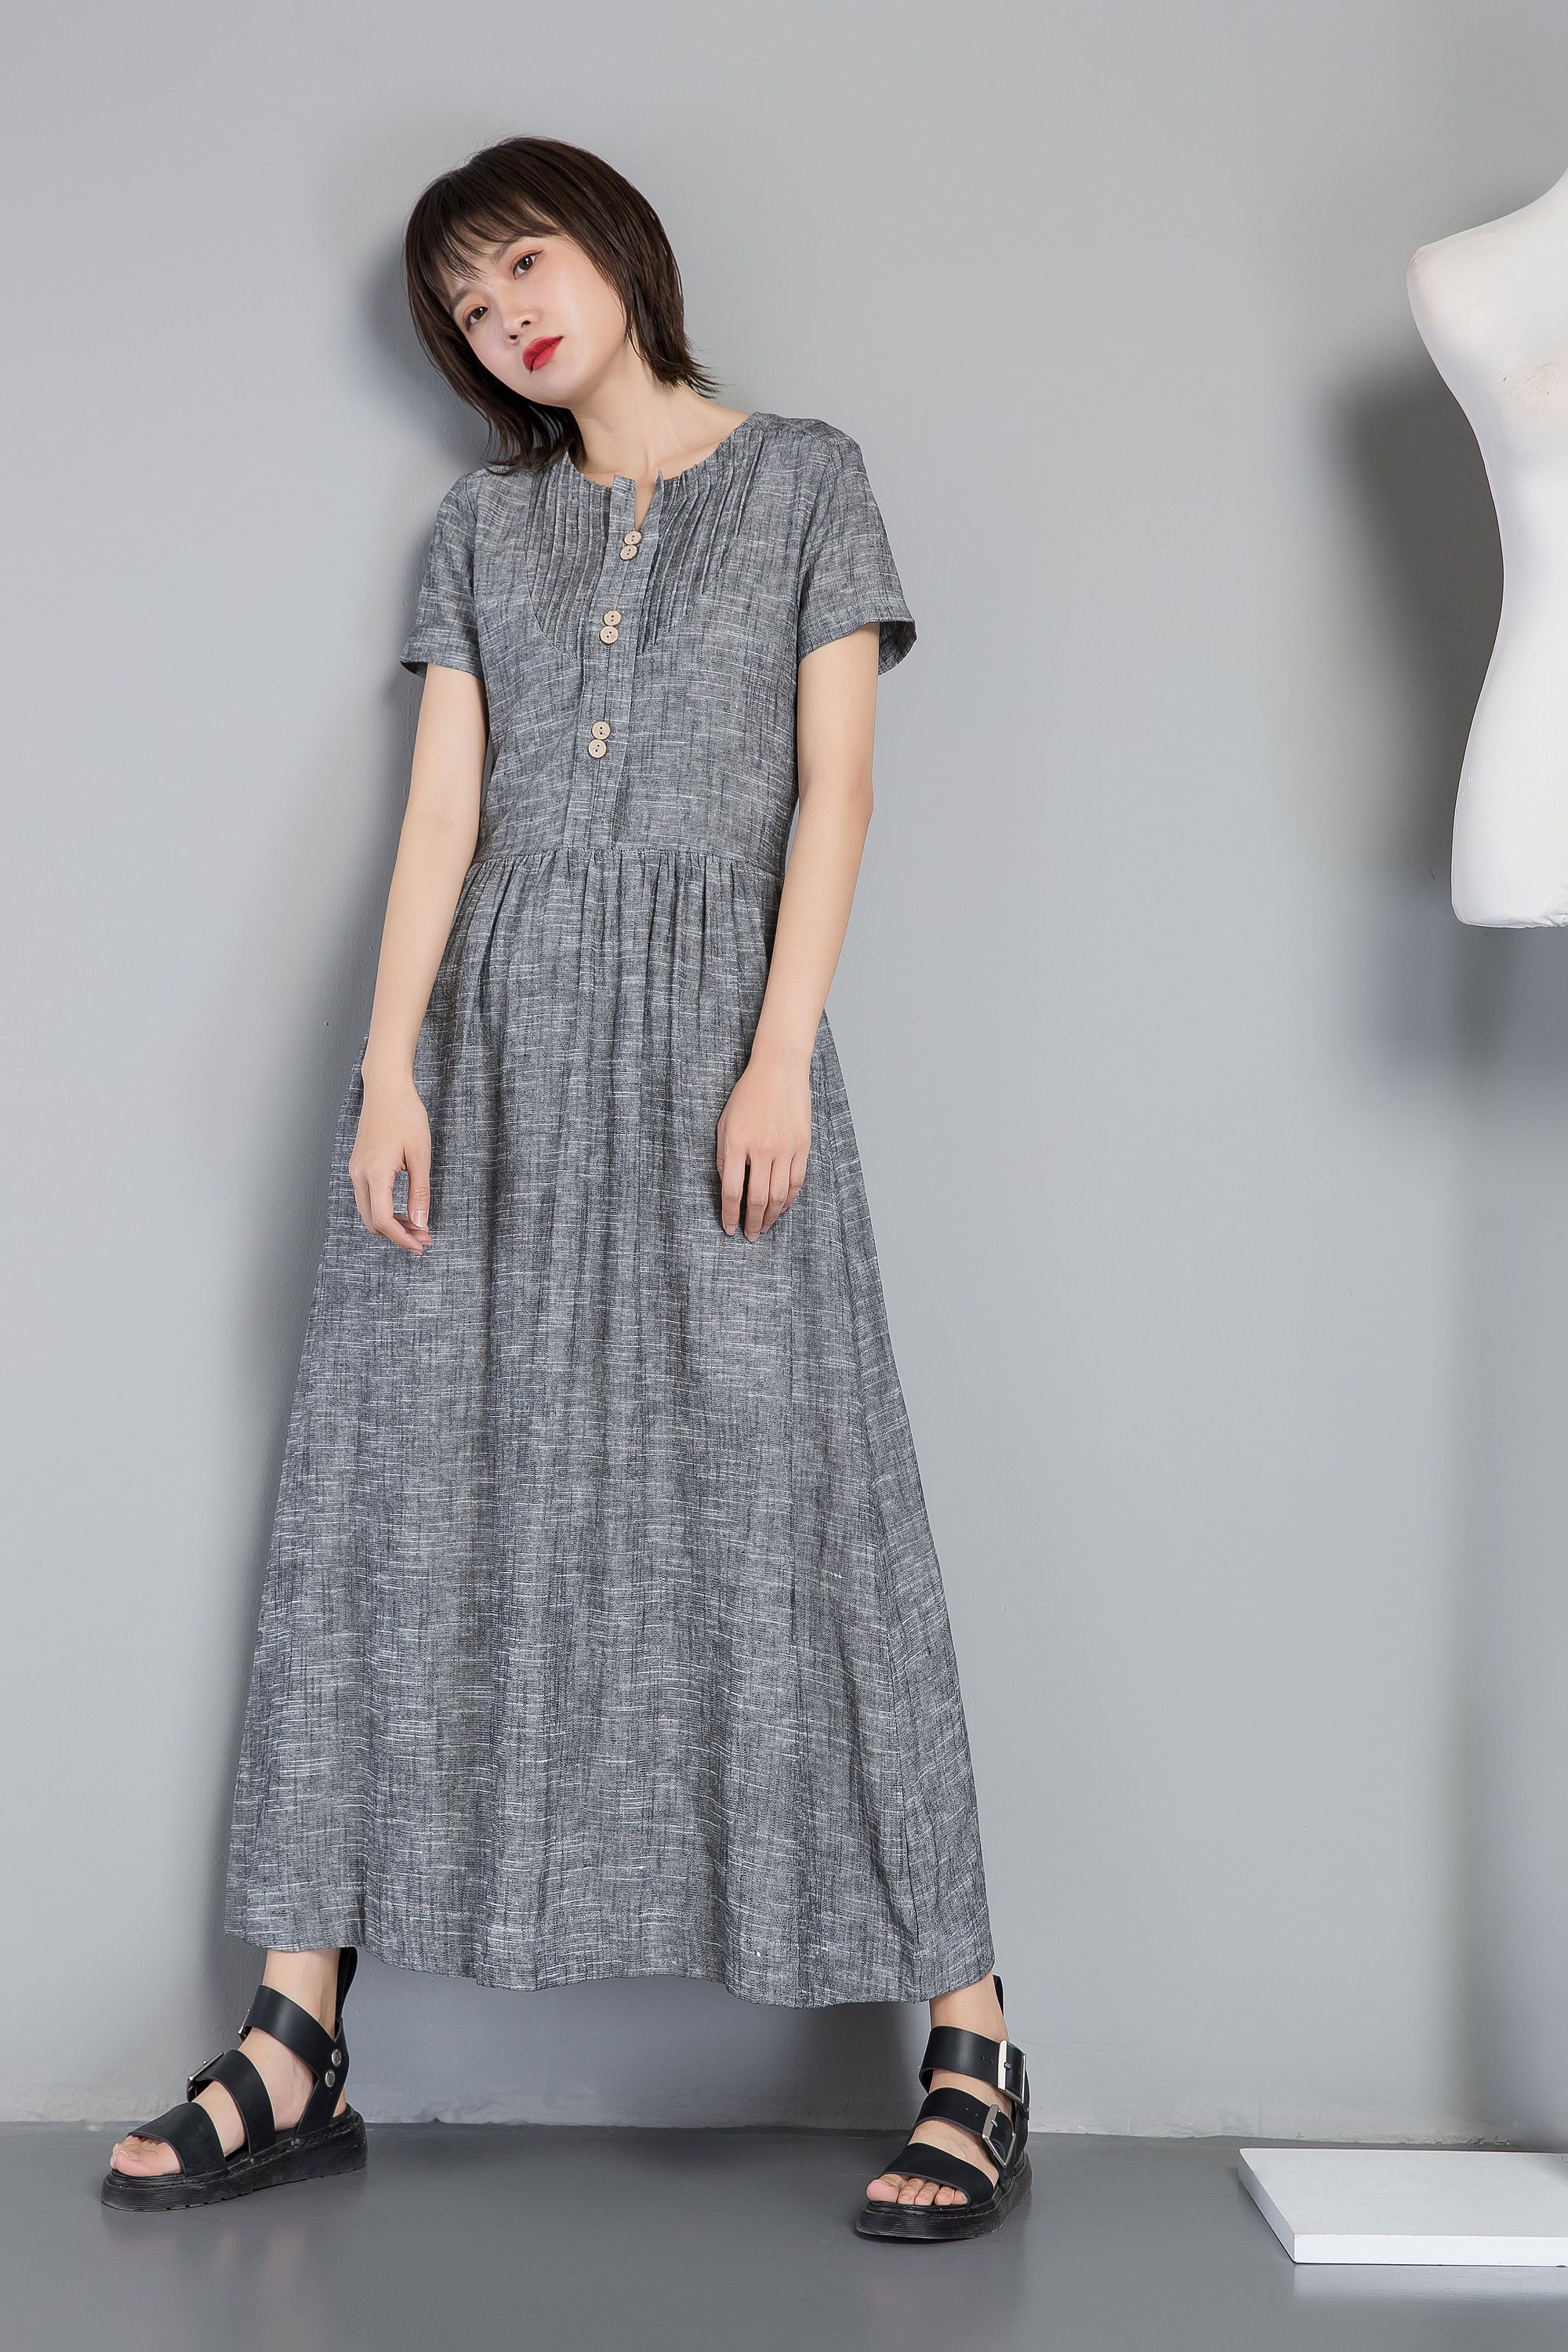 Linen Dress Long Linen Dress Gray Linen Dress for Summer | Etsy